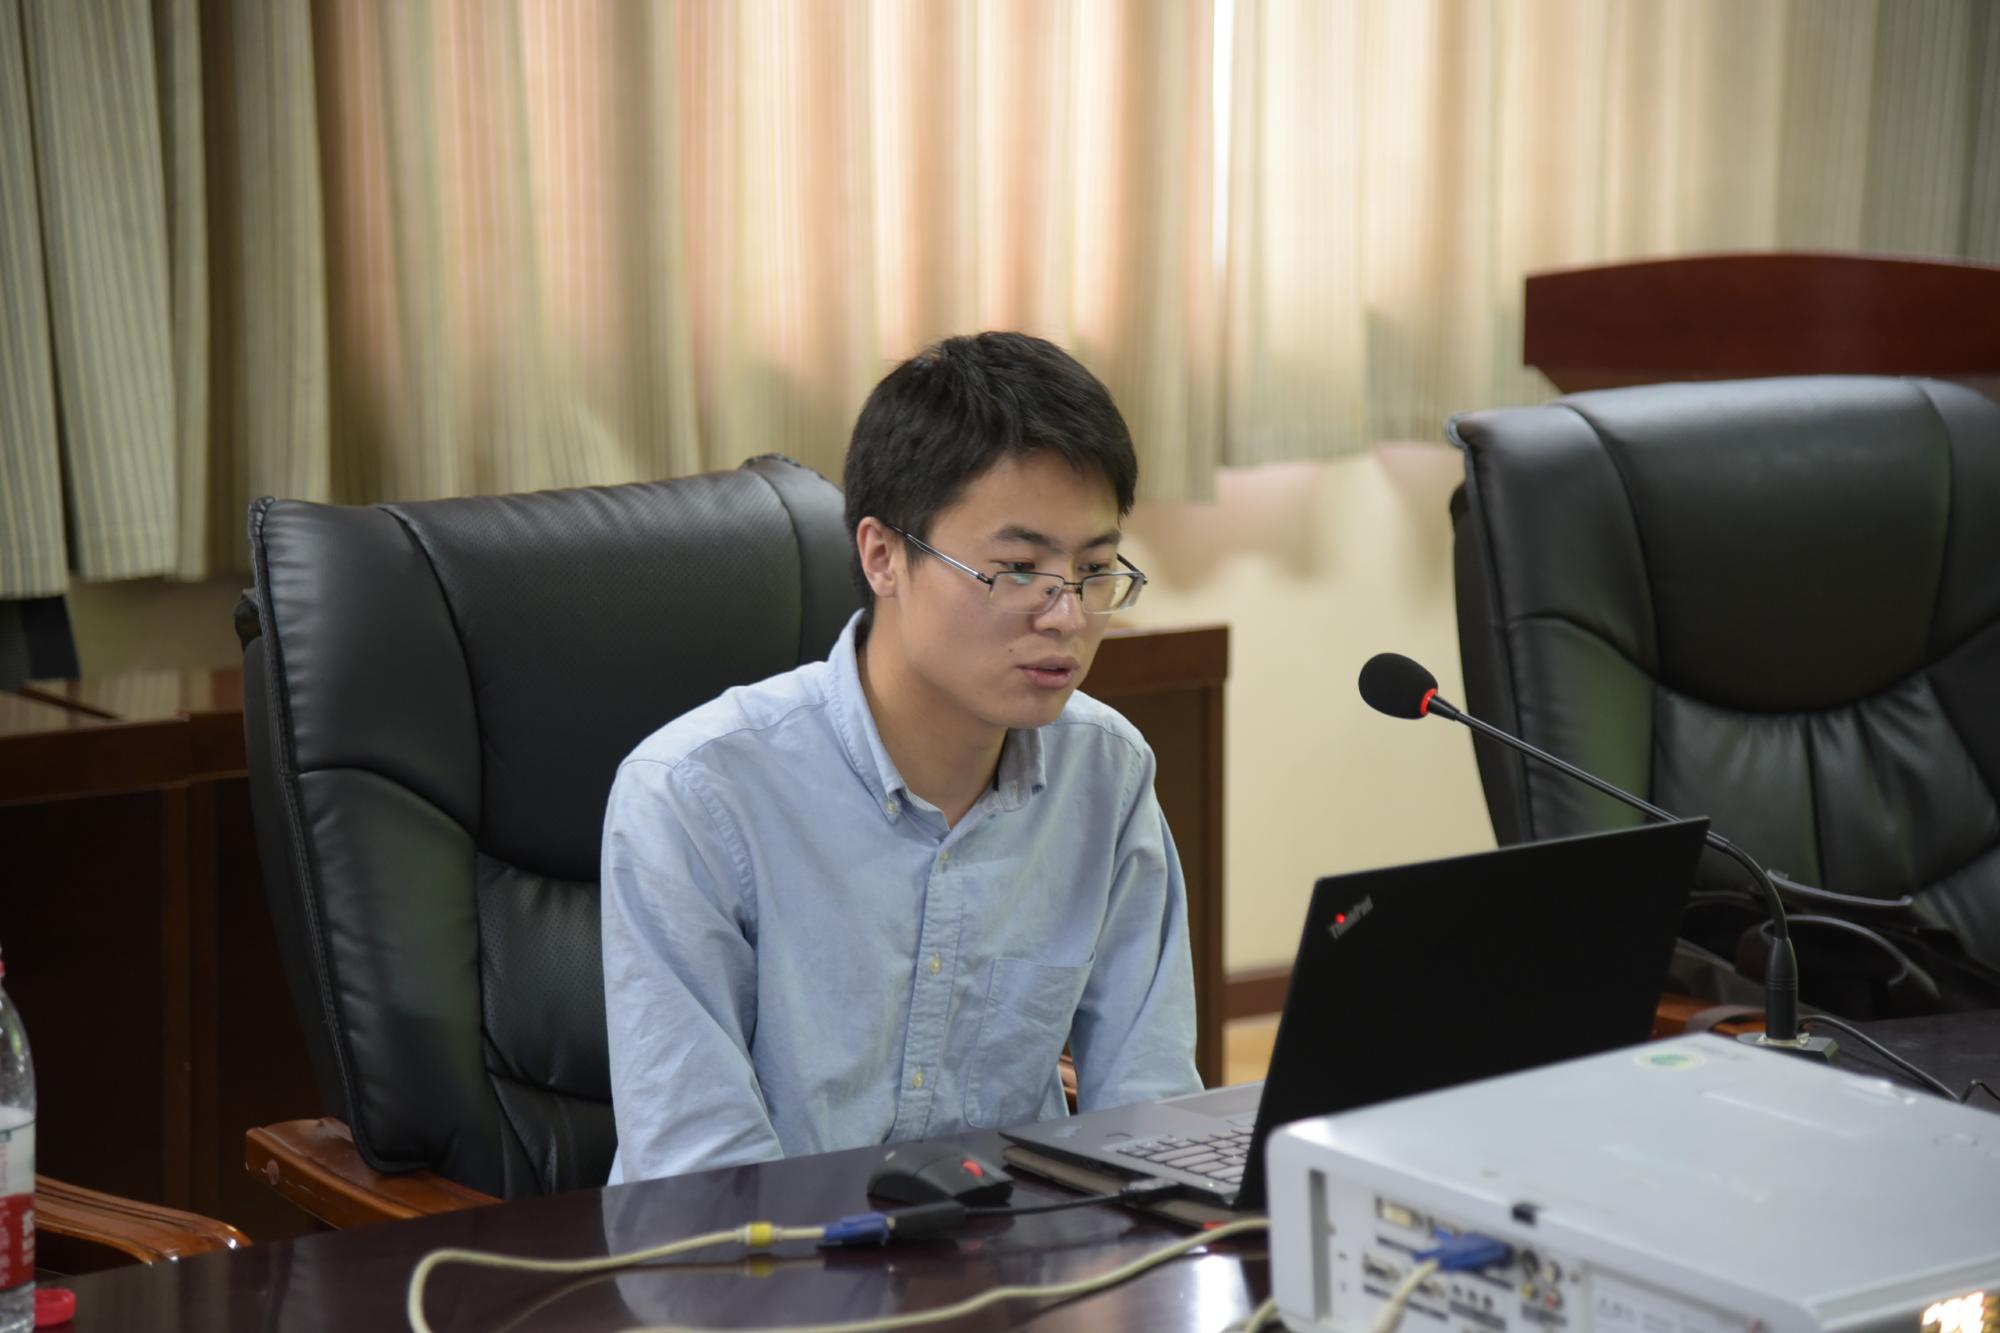 04硕士研究生2014级党员徐怀祥向同学们介绍求职经历